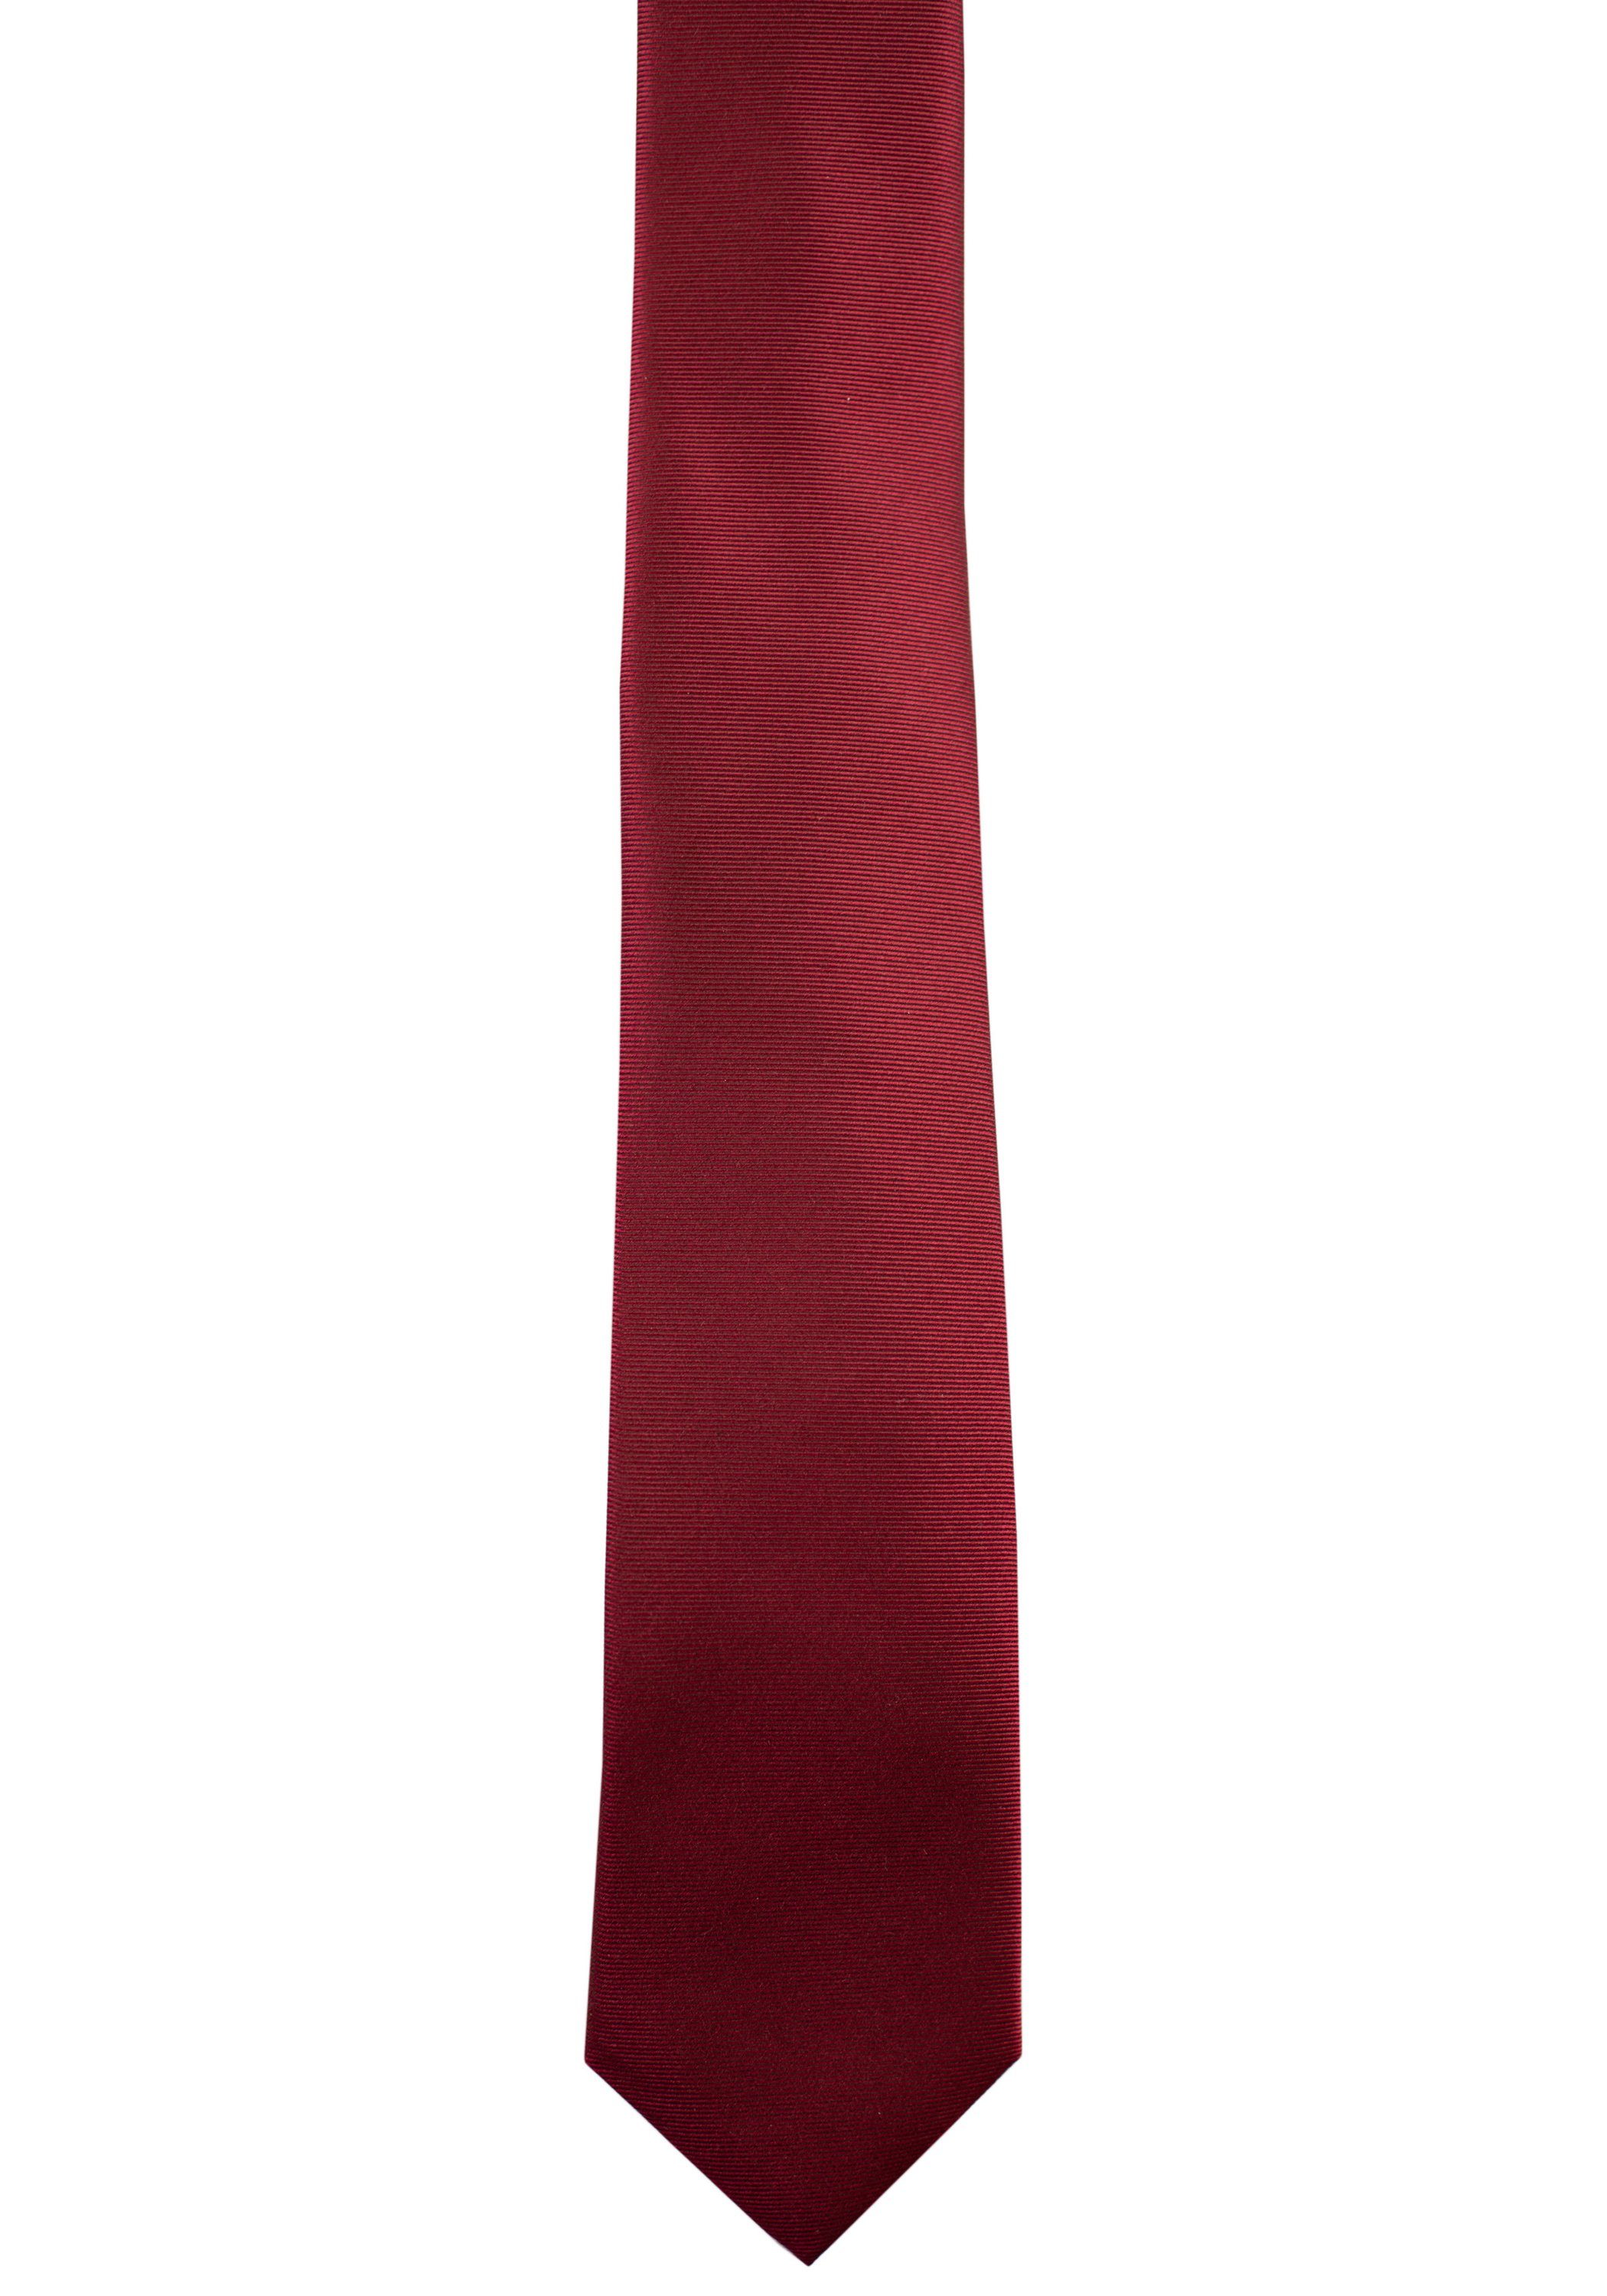 red dark Roy mit Robson Musterung Krawatte aus Seide feiner - 100%